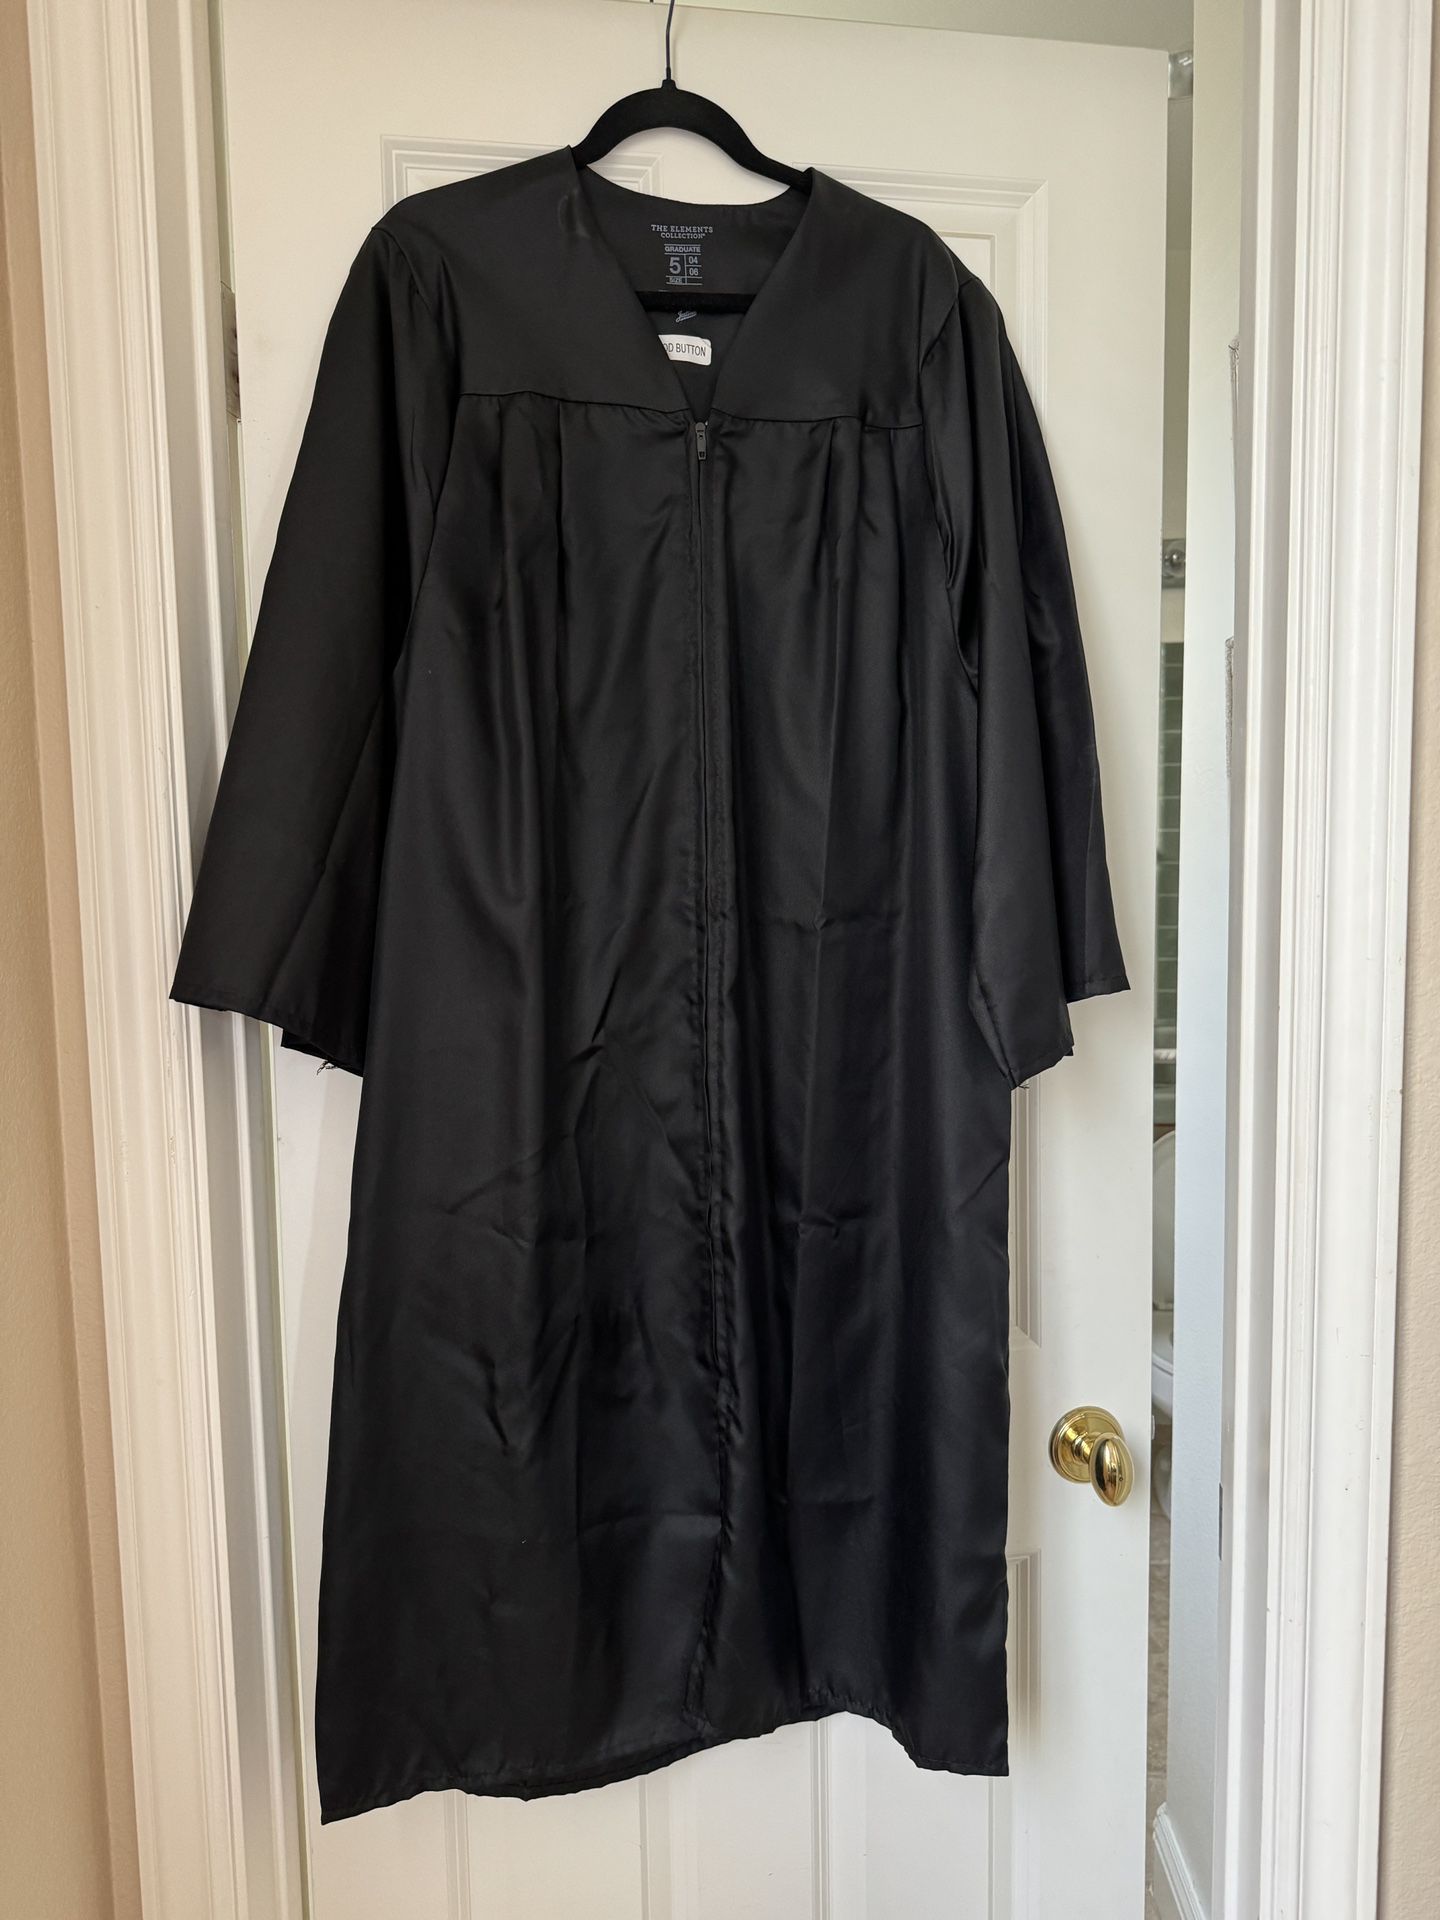 Graduation Gown - Black Size 5’4” - 5’6”